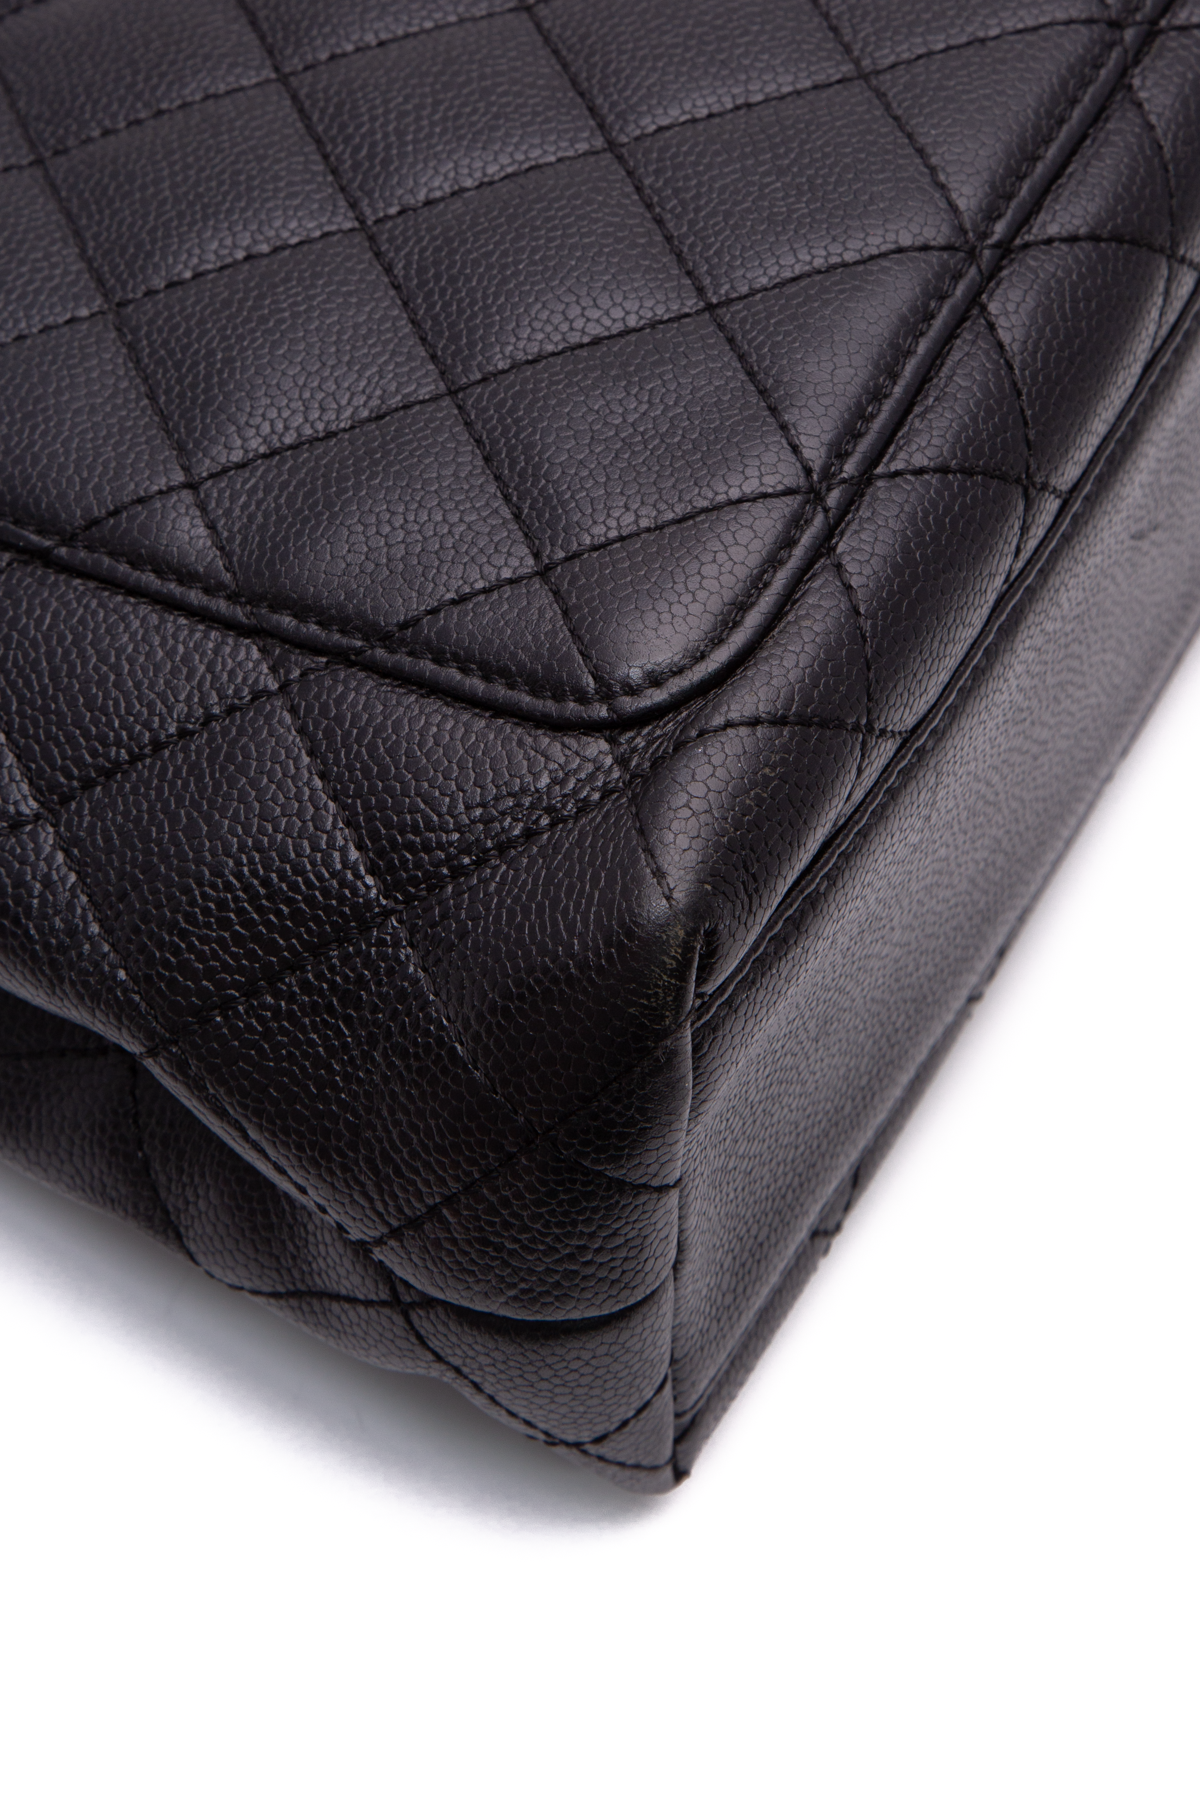 Exceptional vintage Chanel Timeless Jumbo single Flap bag handbag